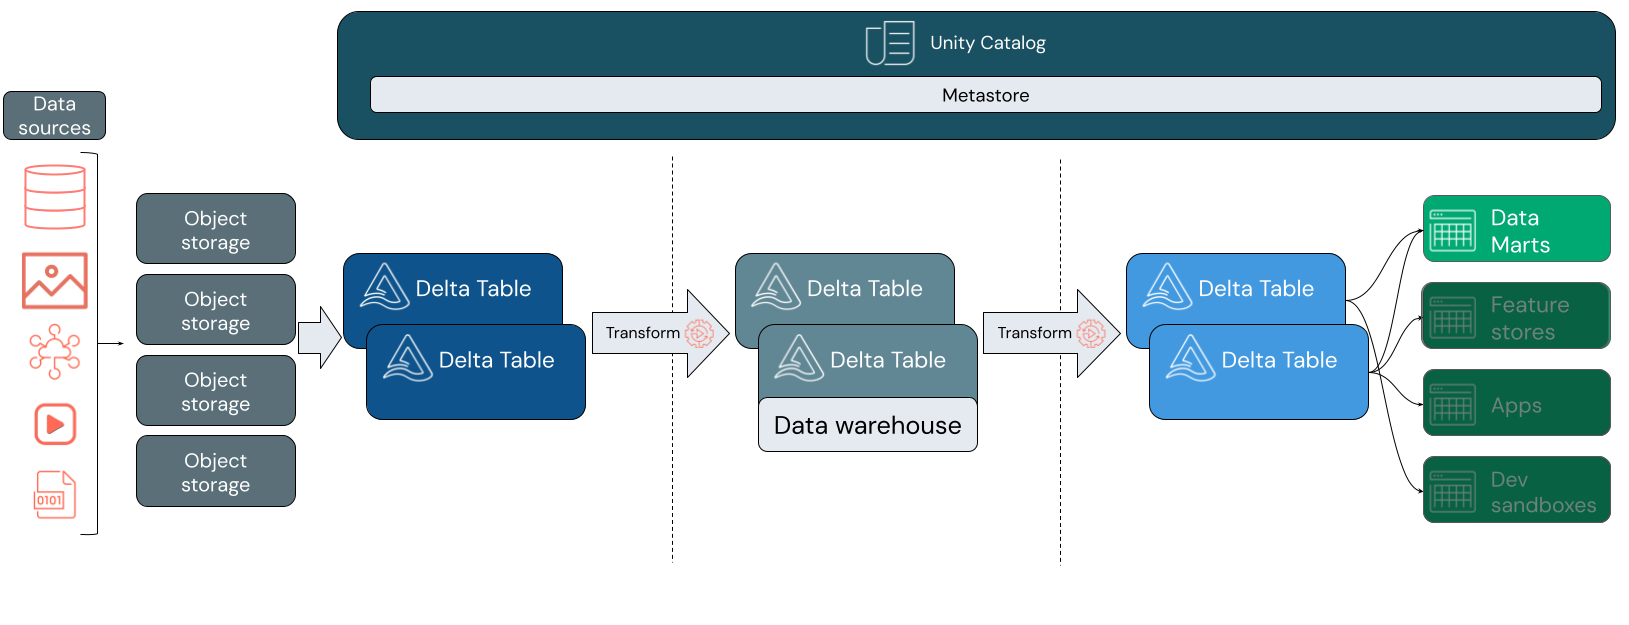 Architecture Lakehouse avec une couche supérieure comprenant l’entrepôt de données, l’engineering données, la diffusion en continu de données ainsi que la science des données et ML